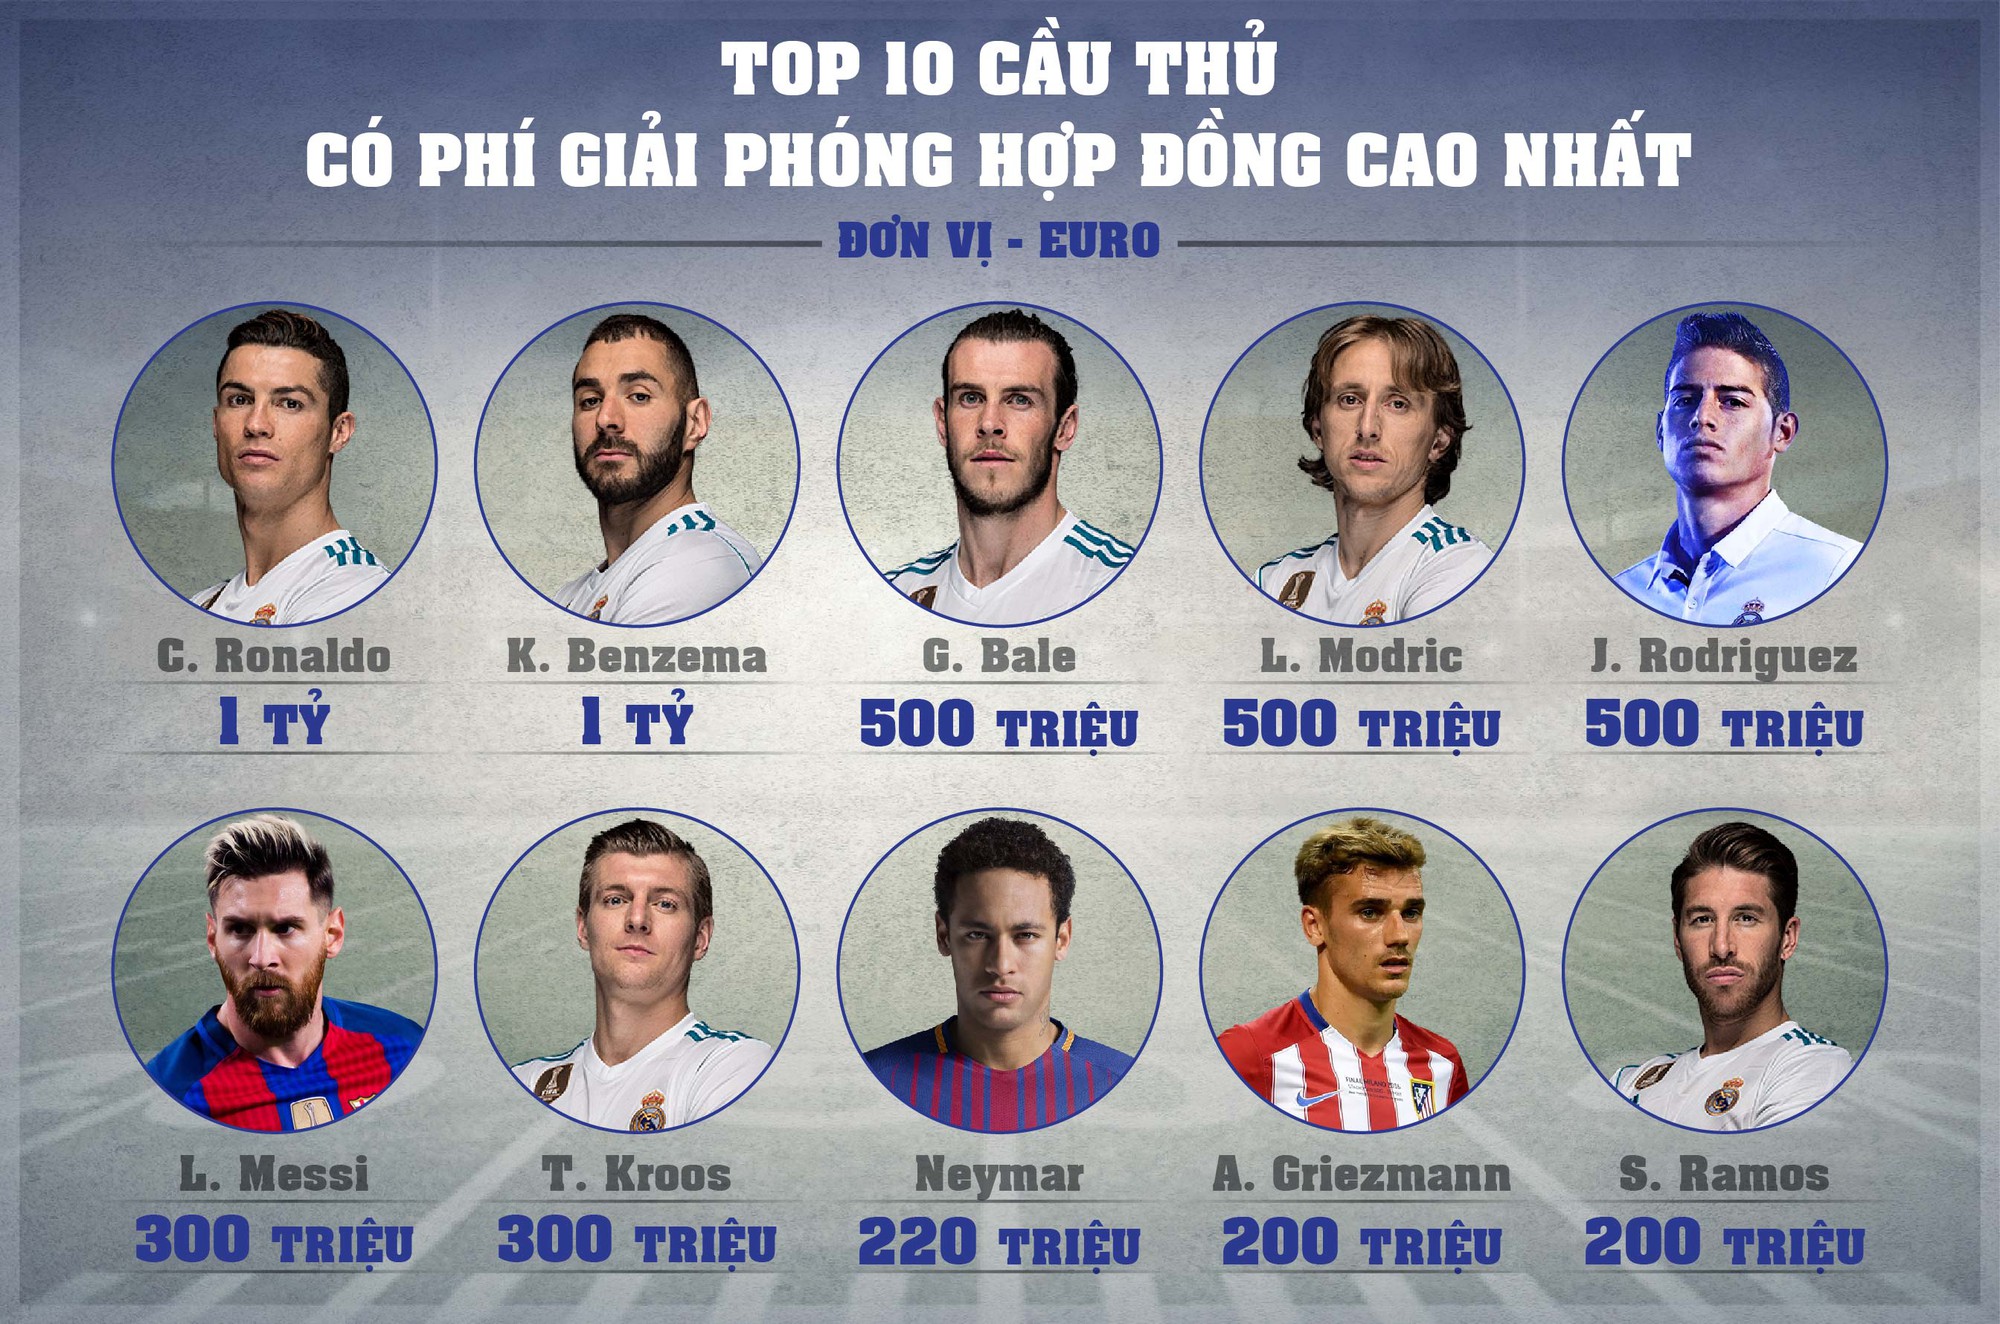 Top 10 cầu thủ có phí giải phóng hợp đồng cao nhất thế giới